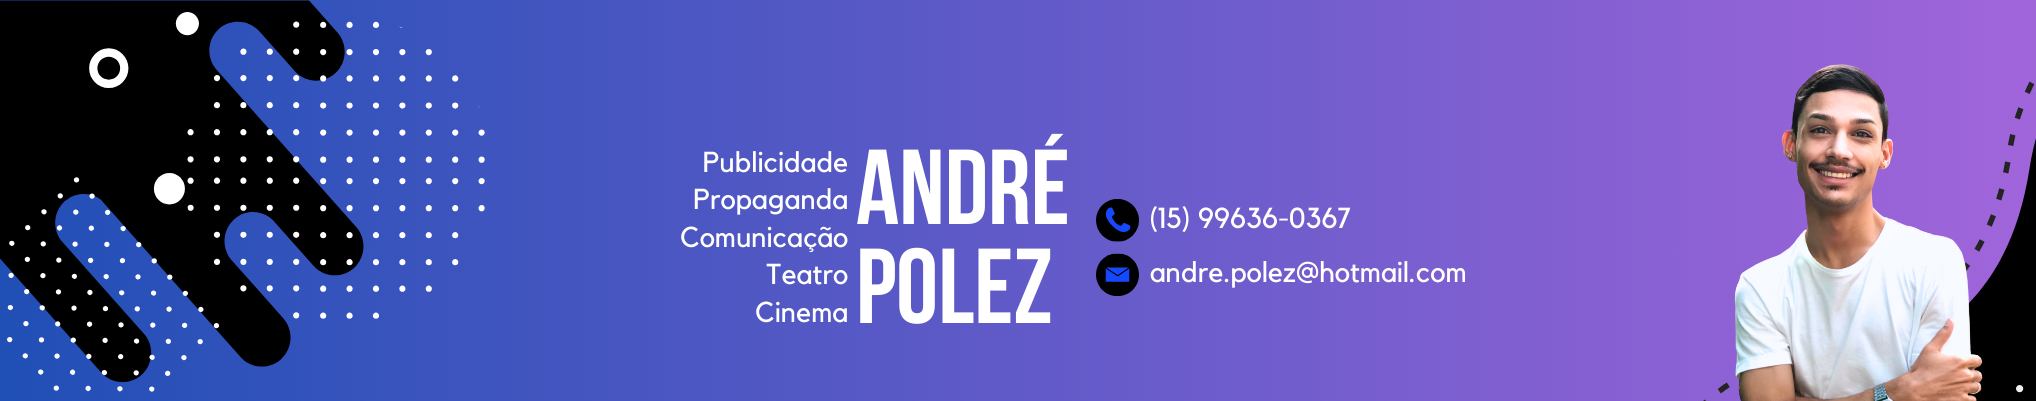 André Augusto Polez de Oliveira's profile banner